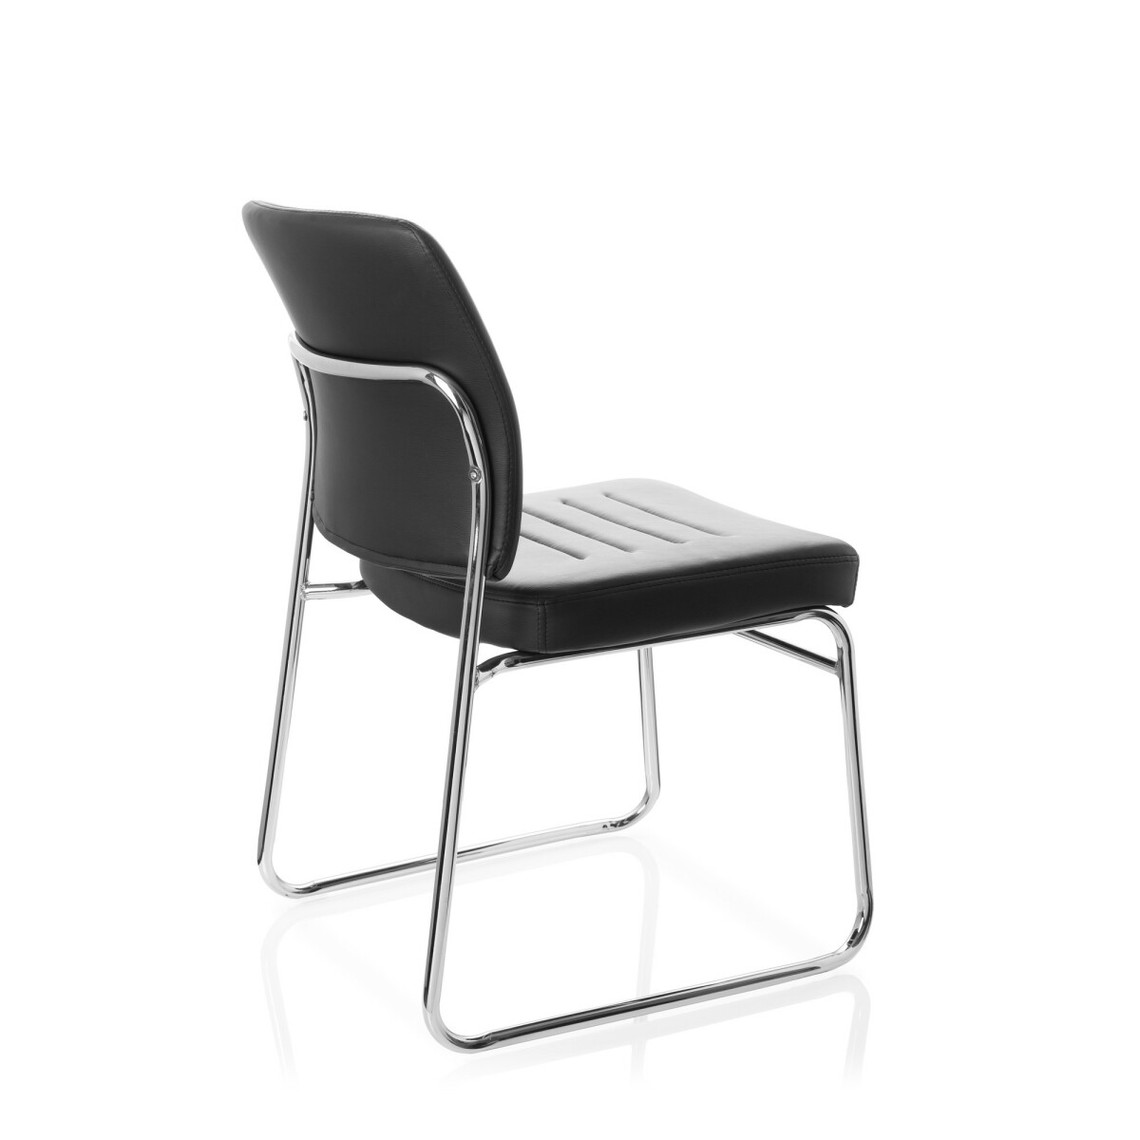 chaise de réunion SOMOS V simili cuir noir hjh OFFICE 706802 chaise visiteur 